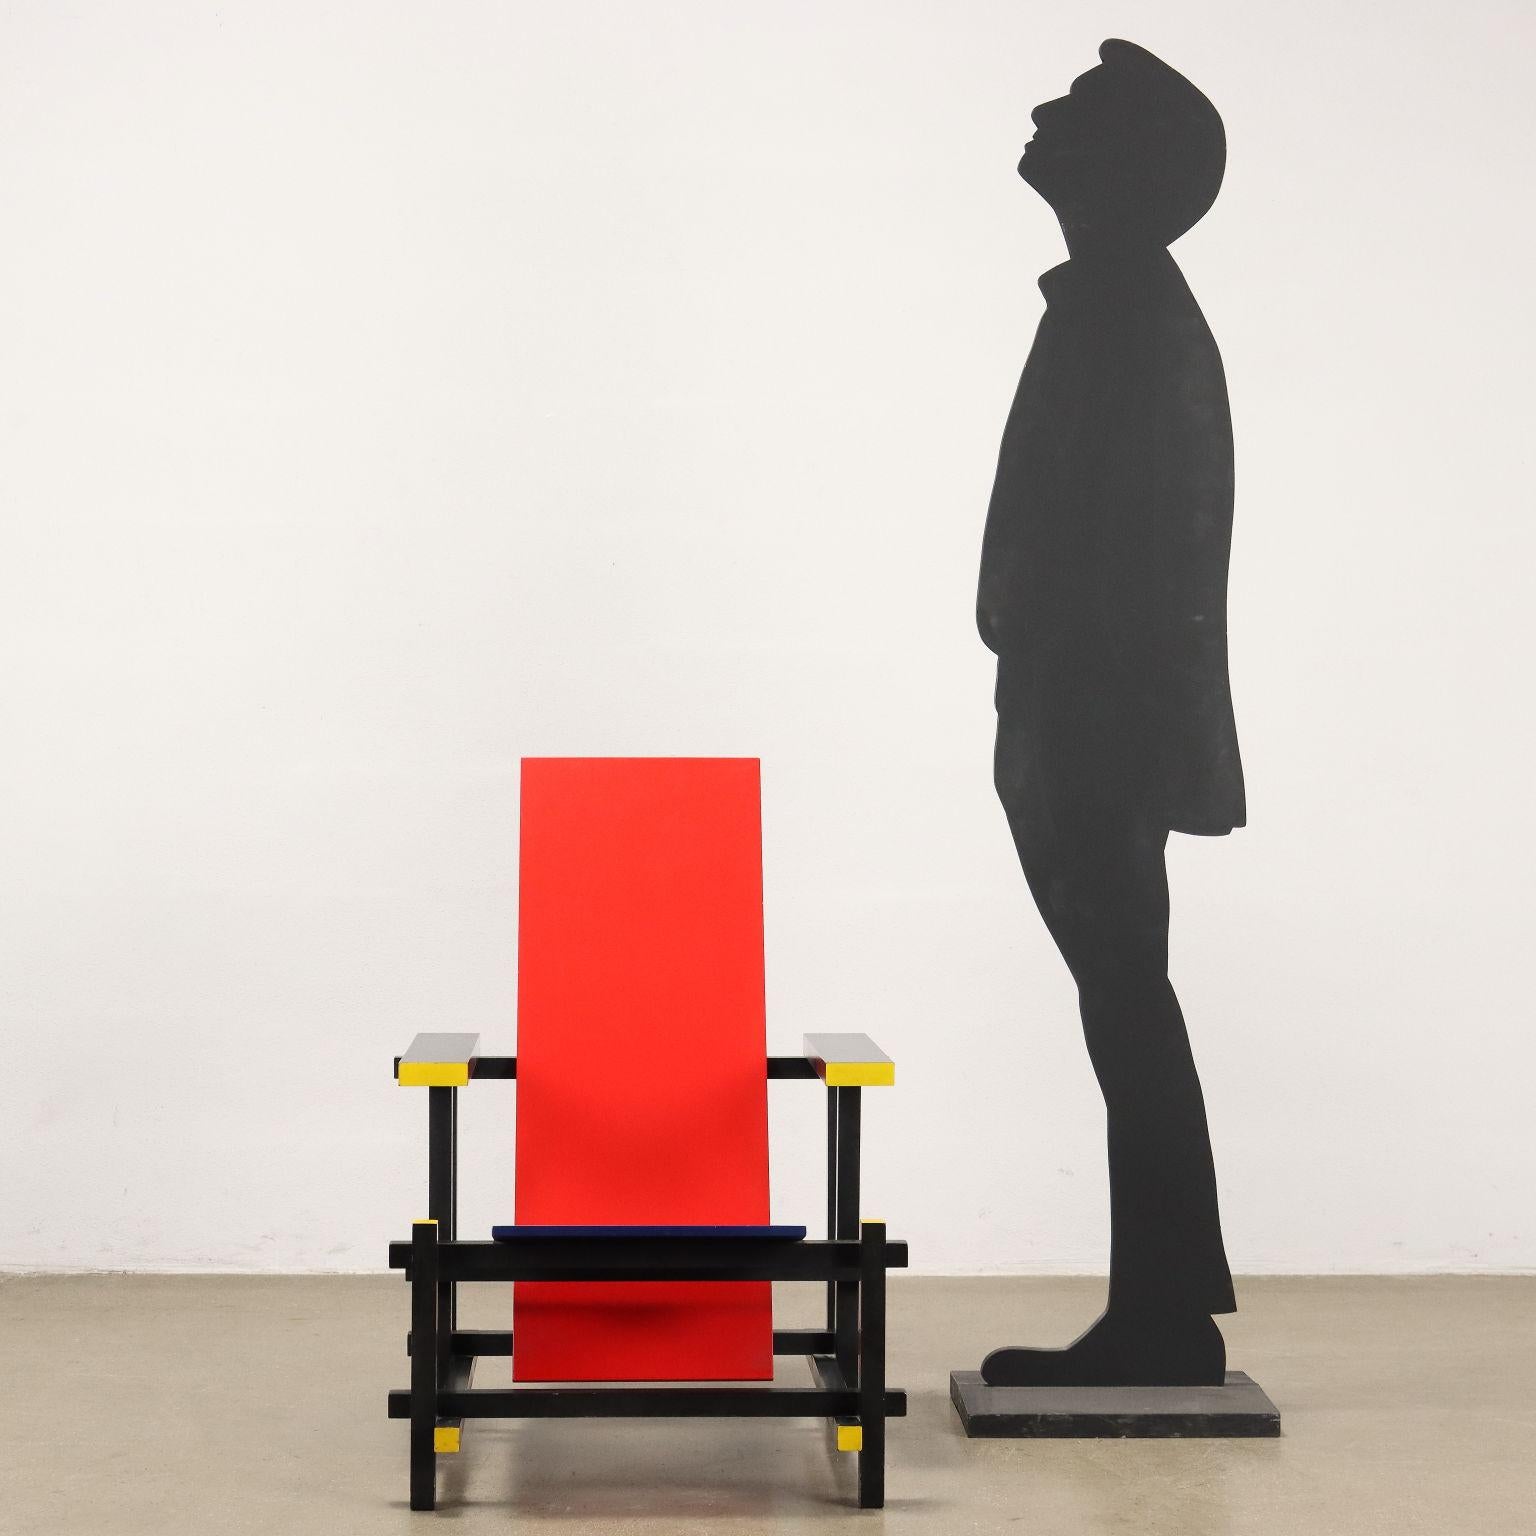 Iconica poltrona modello 'Red & Blue' progettata da Gerrit Thomas Rietveld nel 1918. Realizzata con struttura in legno laccato nero, sedile blu e schienale rosso, è considerata la realizzazione tridimensionale dei principi figurativi dell'arte di